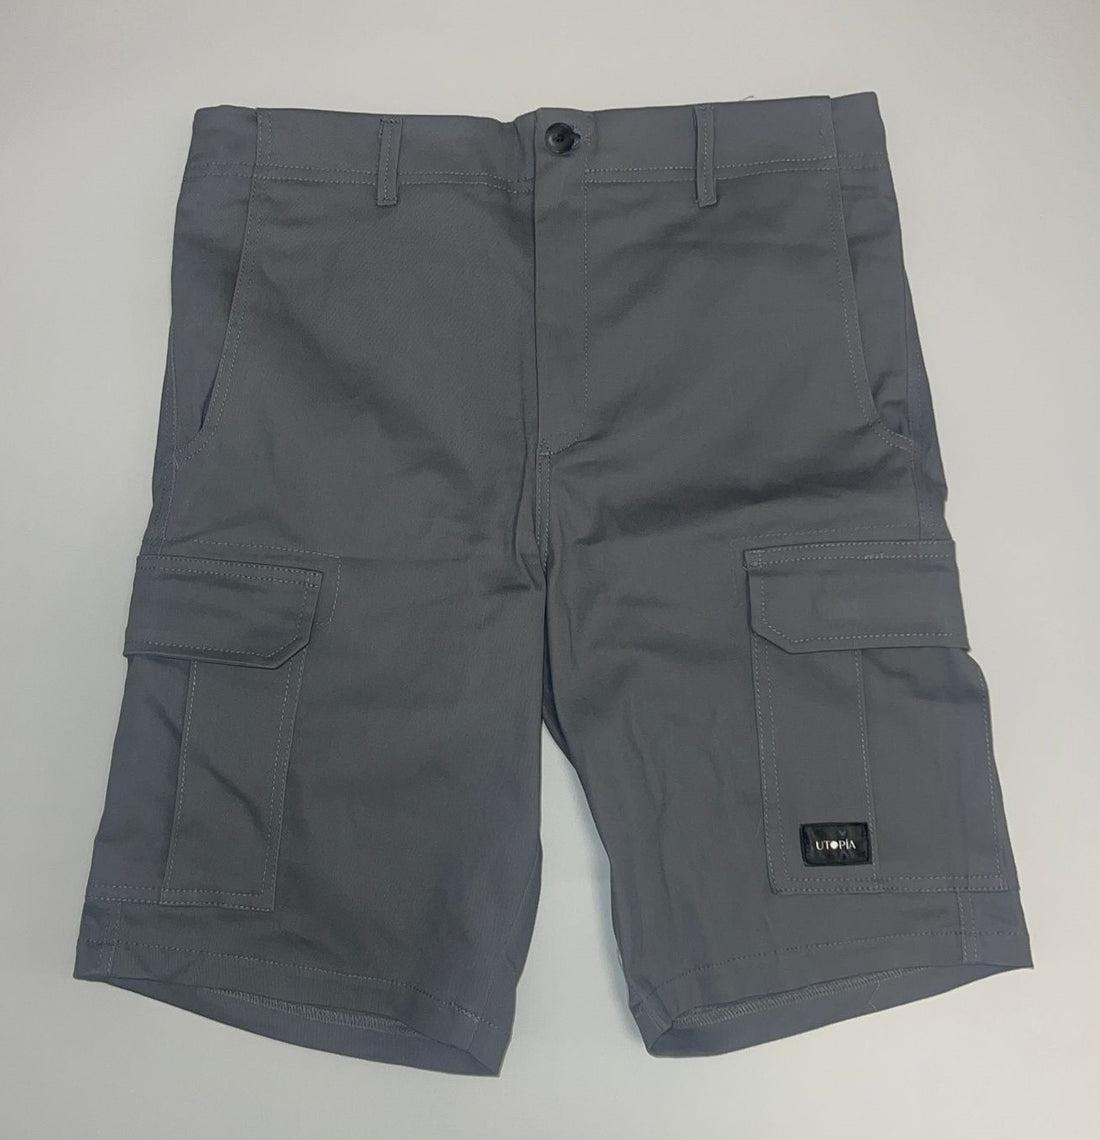 Utopía Cargo Shorts (Gray)